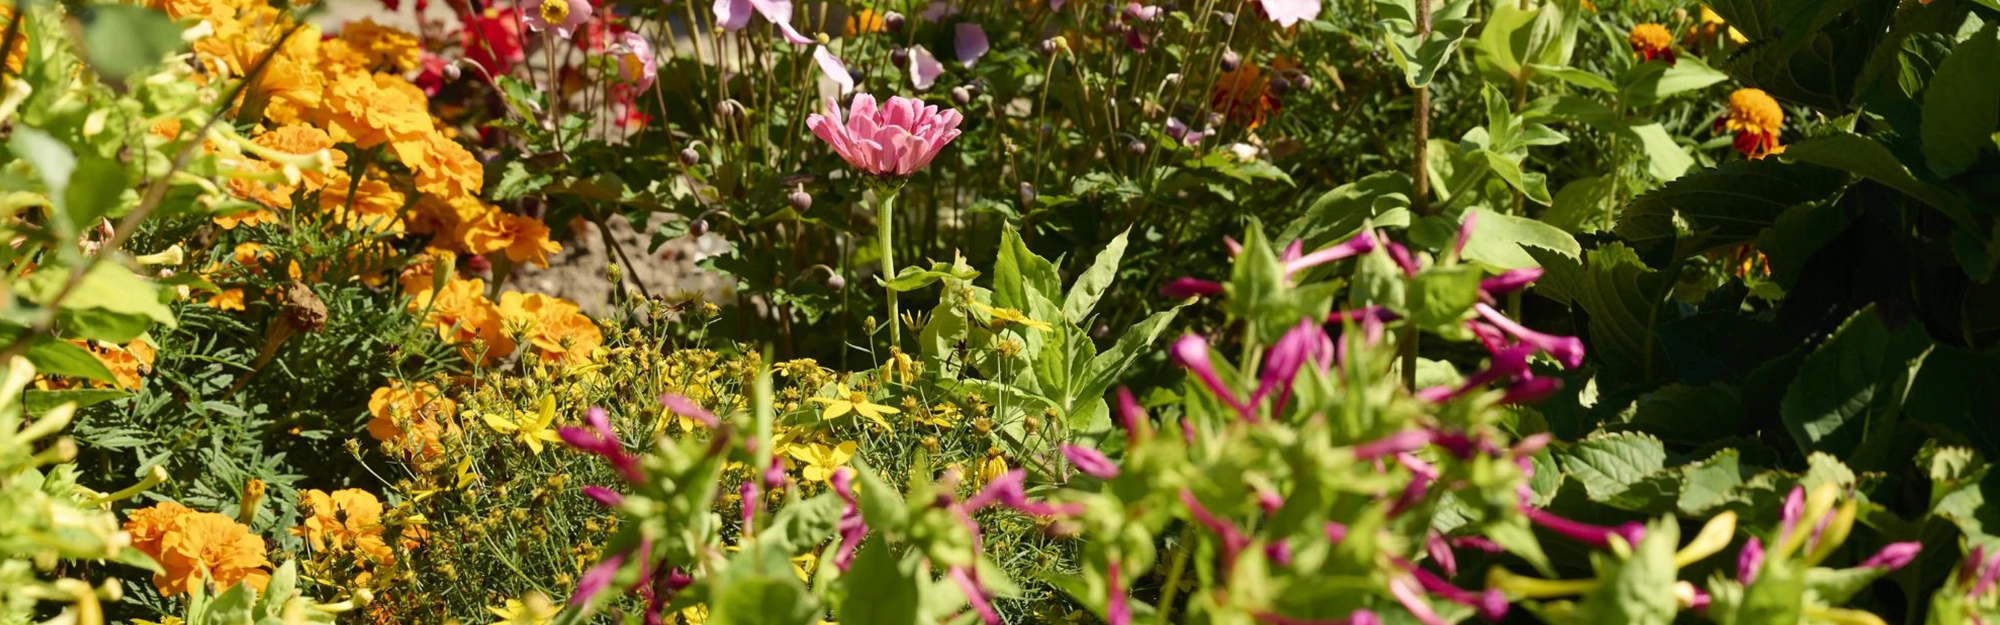 Ein Bild verschiedener Blumensträuche im Garten